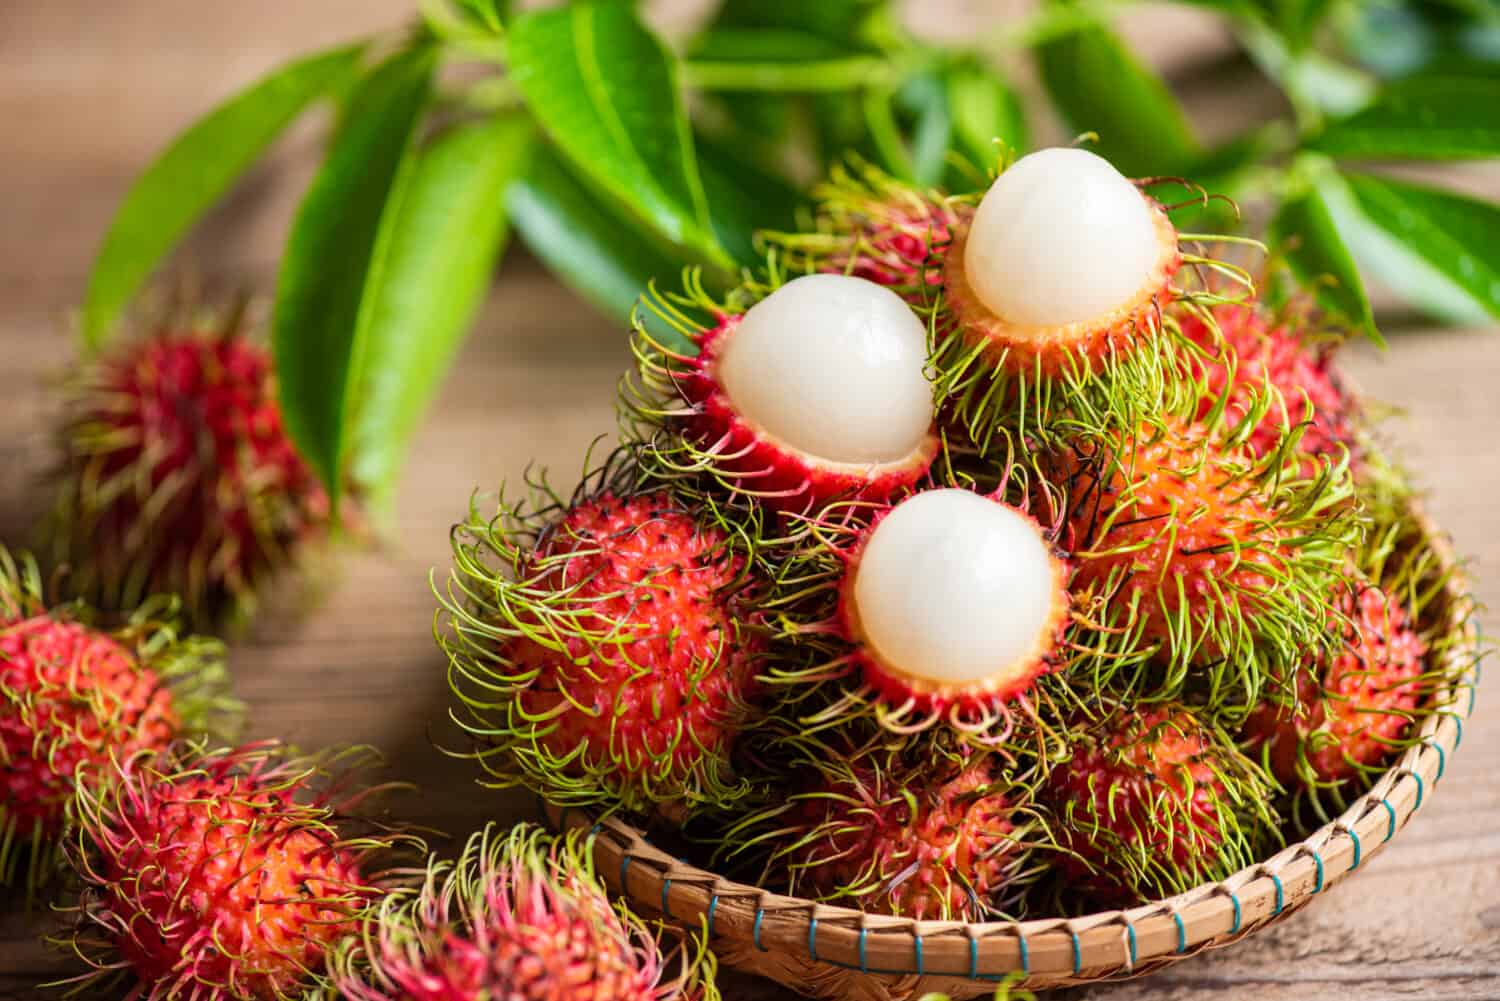 Fruta tropical dulce de rambután fresca y madura con hojas de rambután peladas, fruta de rambután en la cesta y cosecha de fondo de madera del jardín